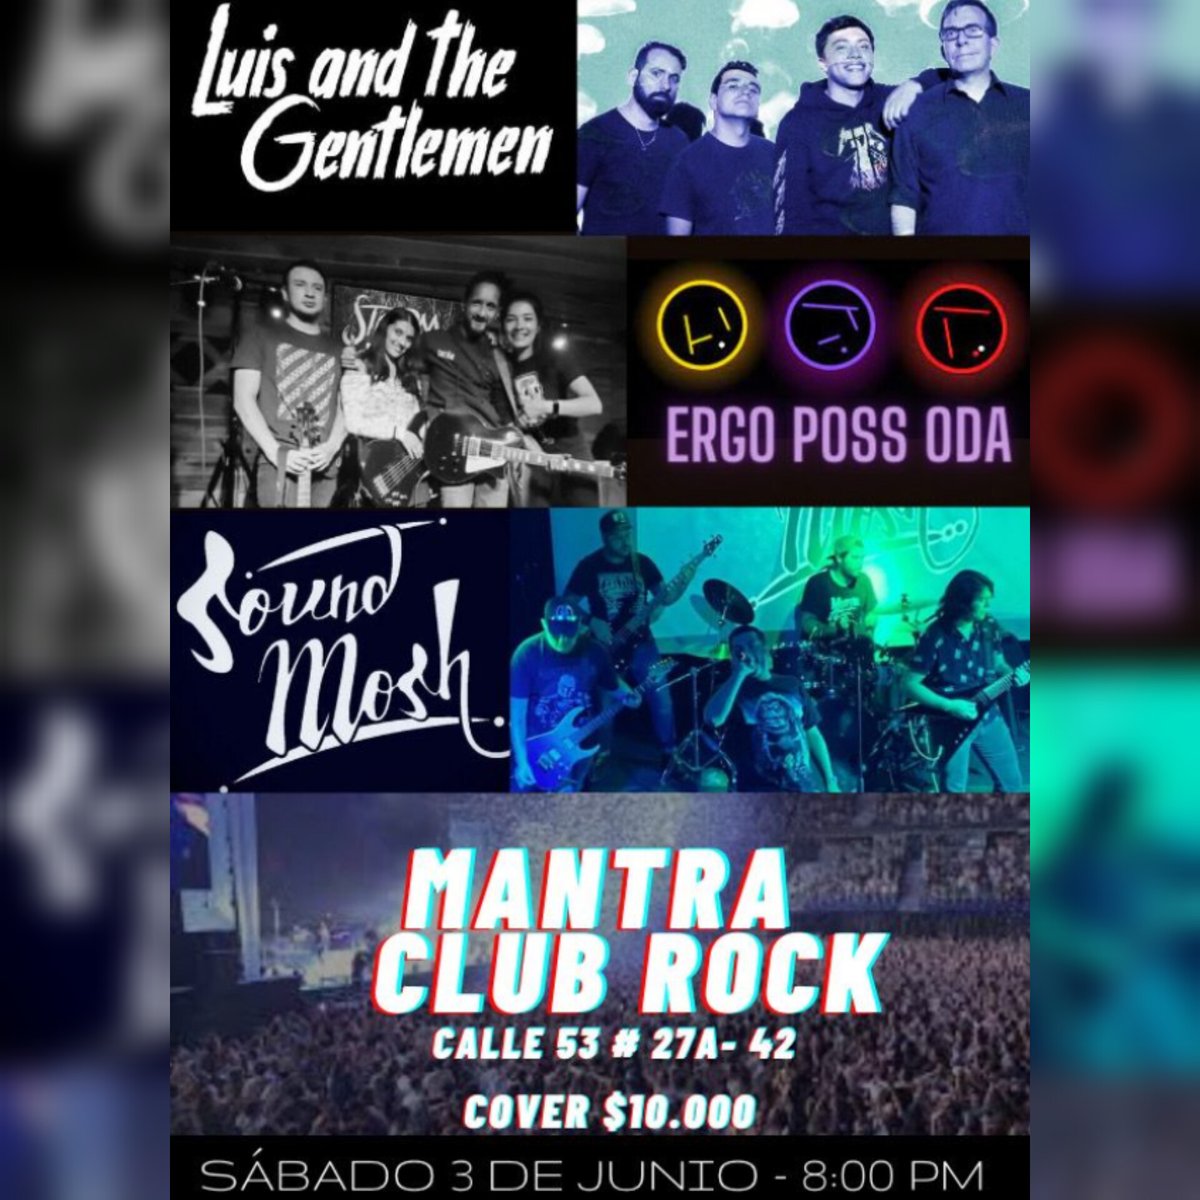 ¡Hoy sábado 3 de junio en Mantra Club Rock (Calle 53 con 27a) desde las 8 p.m.!
#rockalternativo #musica #musicarock #concierto #bogota #colombia #rockcolombiano